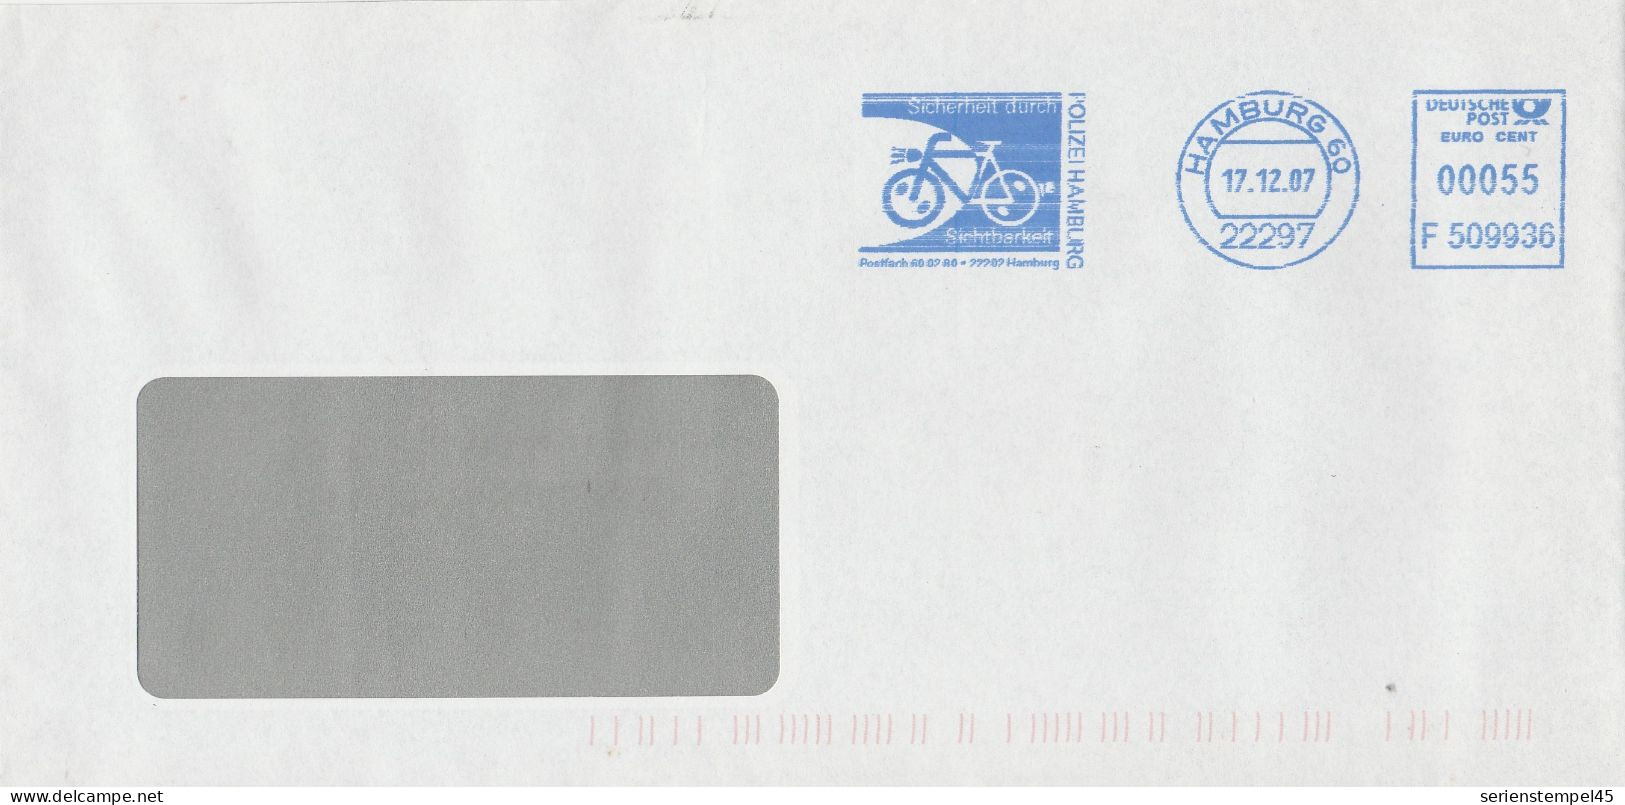 Motive  Verkehr & Transport  Radsport Brief Freistempel Hamburg 2007 Fahrrad Polizei Hamburg F 509936 - Wielrennen